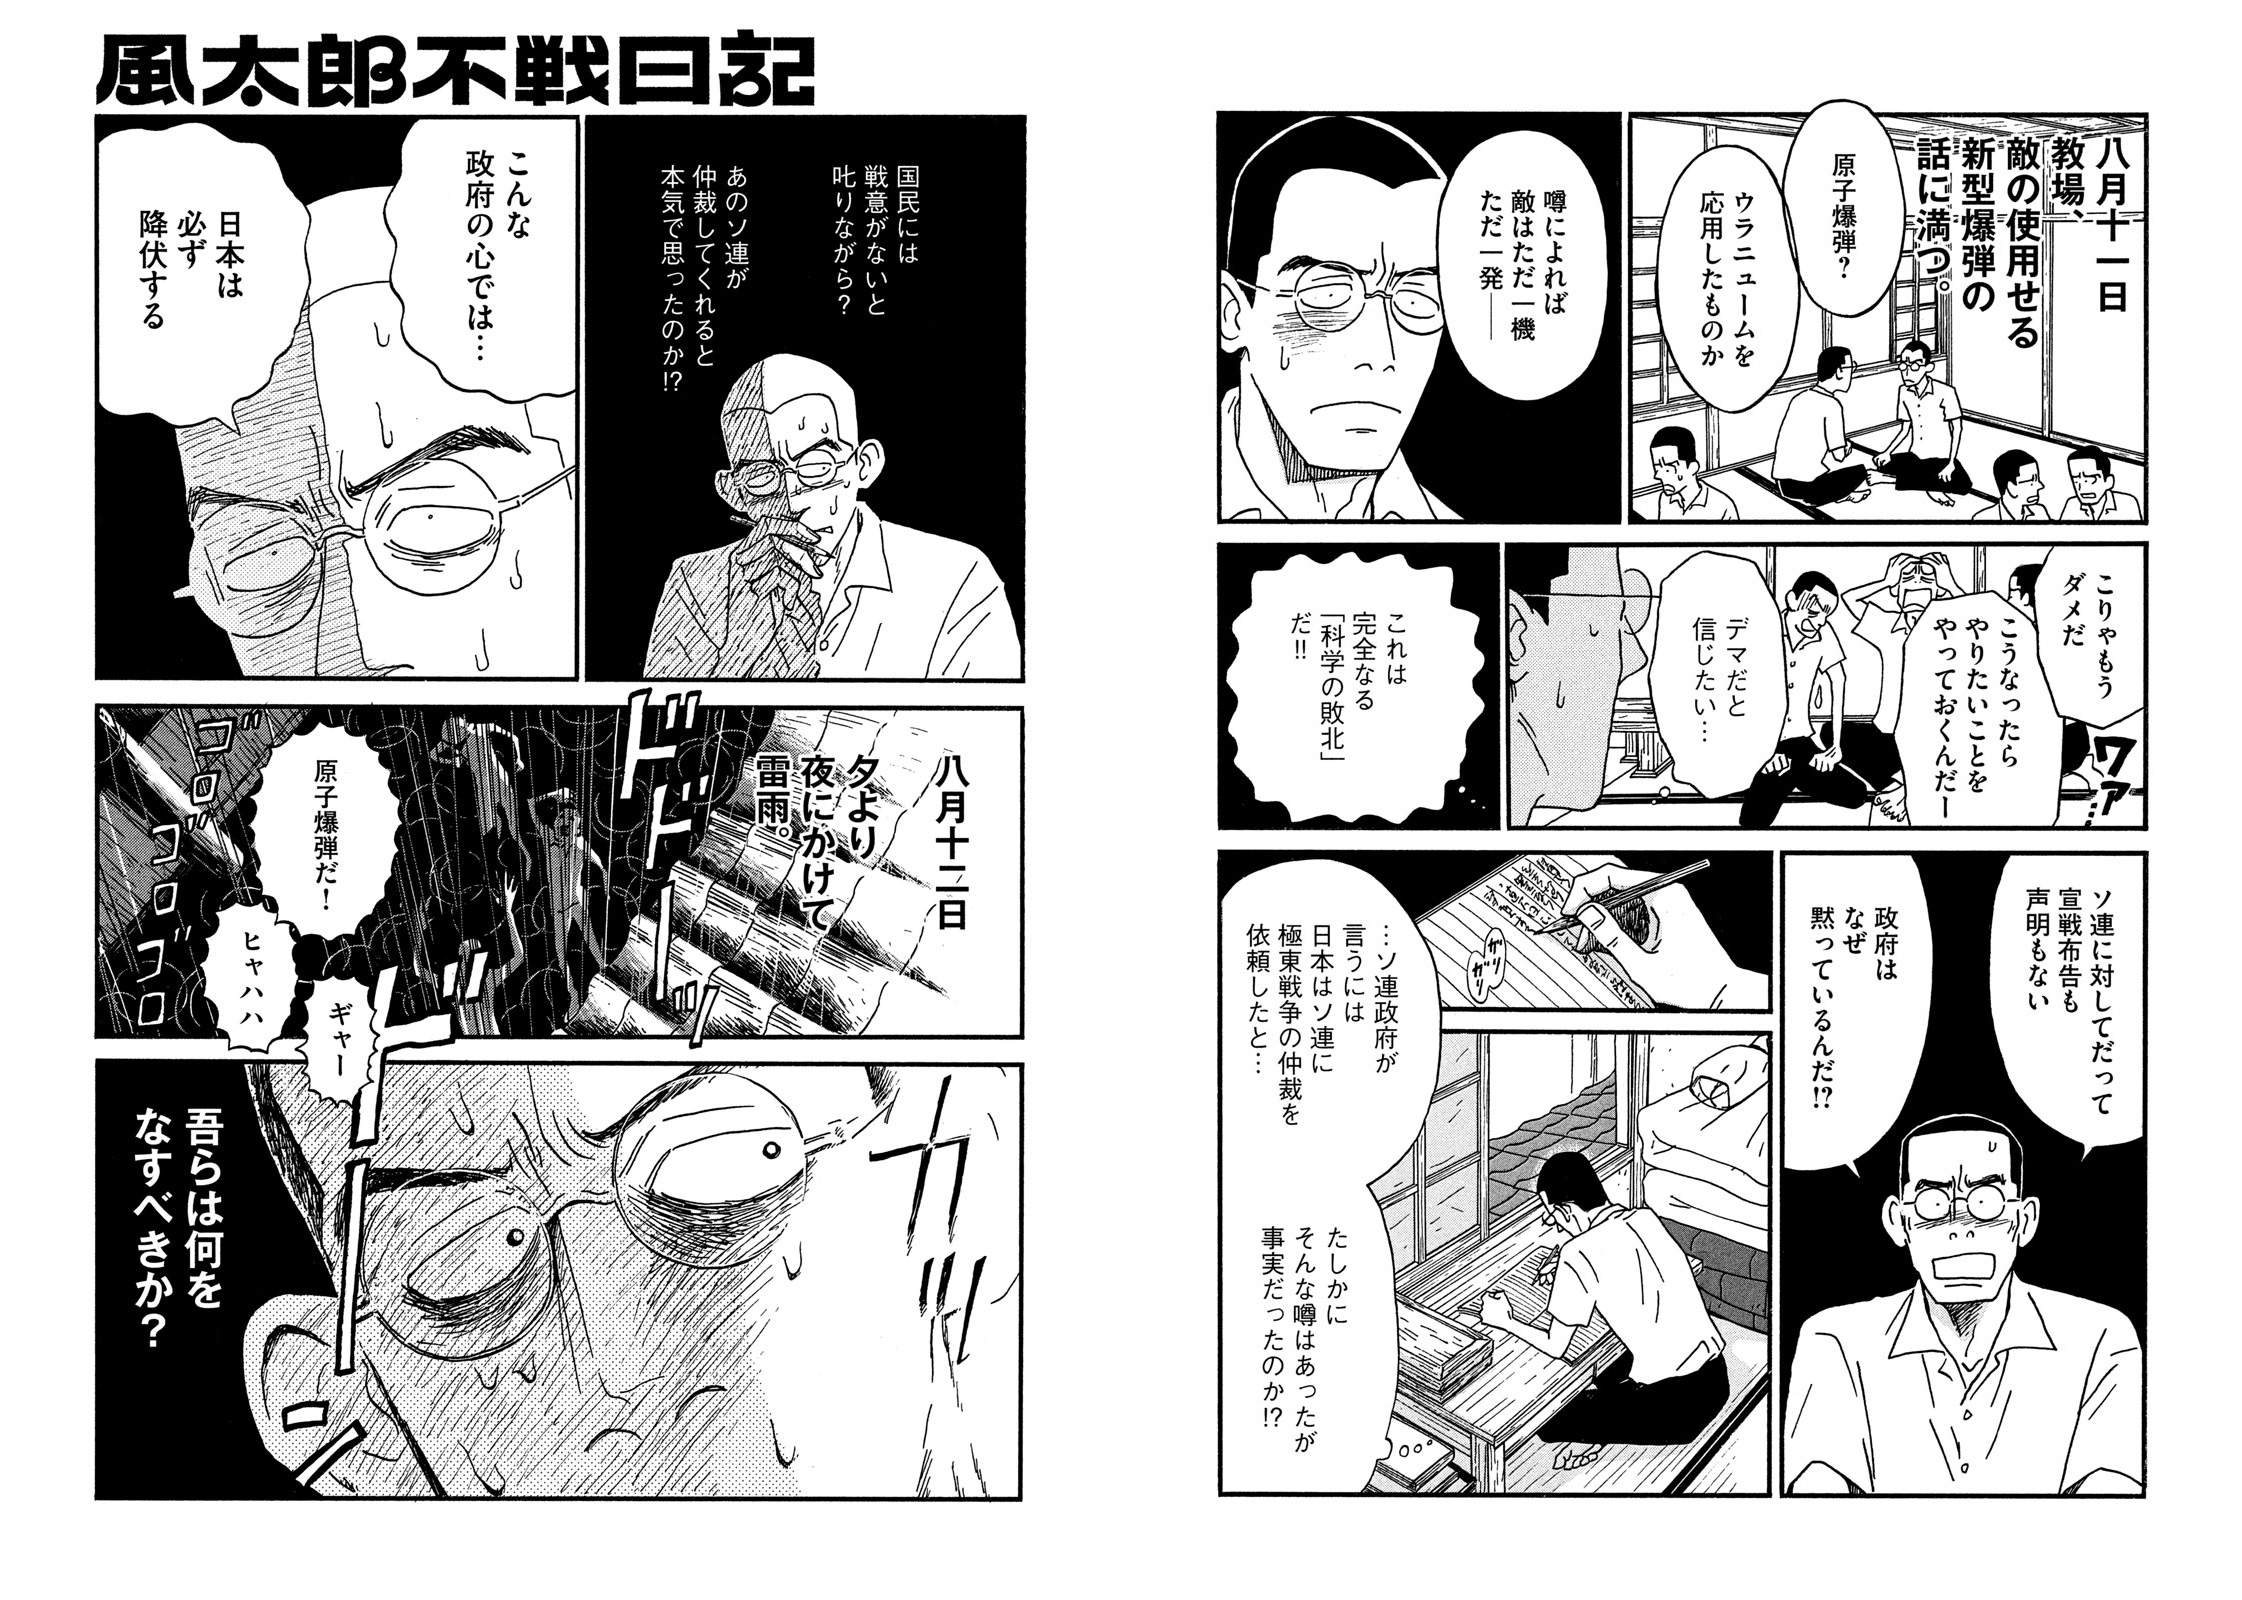 8 17月曜朝放送 令和から昭和20年の山田風太郎と日本を描く 勝田文 風太郎不戦日記 がnhk おはよう日本 内で特集されます モーニング公式サイト 講談社の青年漫画誌